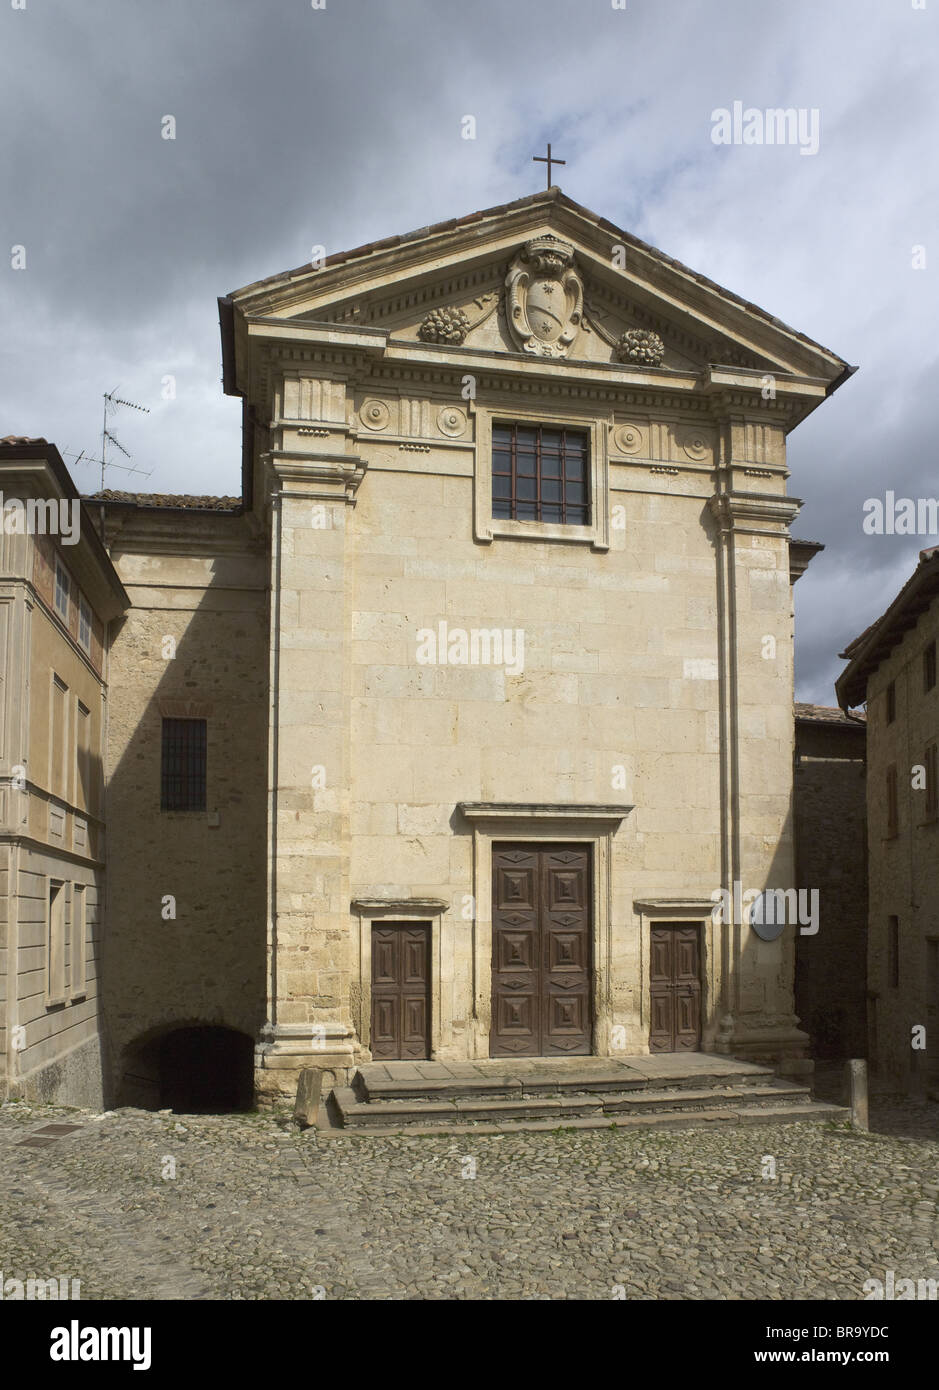 Vigoleno, near Parma, Italy. Oratorio della Madonna delle Grazie. Eighteenth century facade overlooking main square. Stock Photo